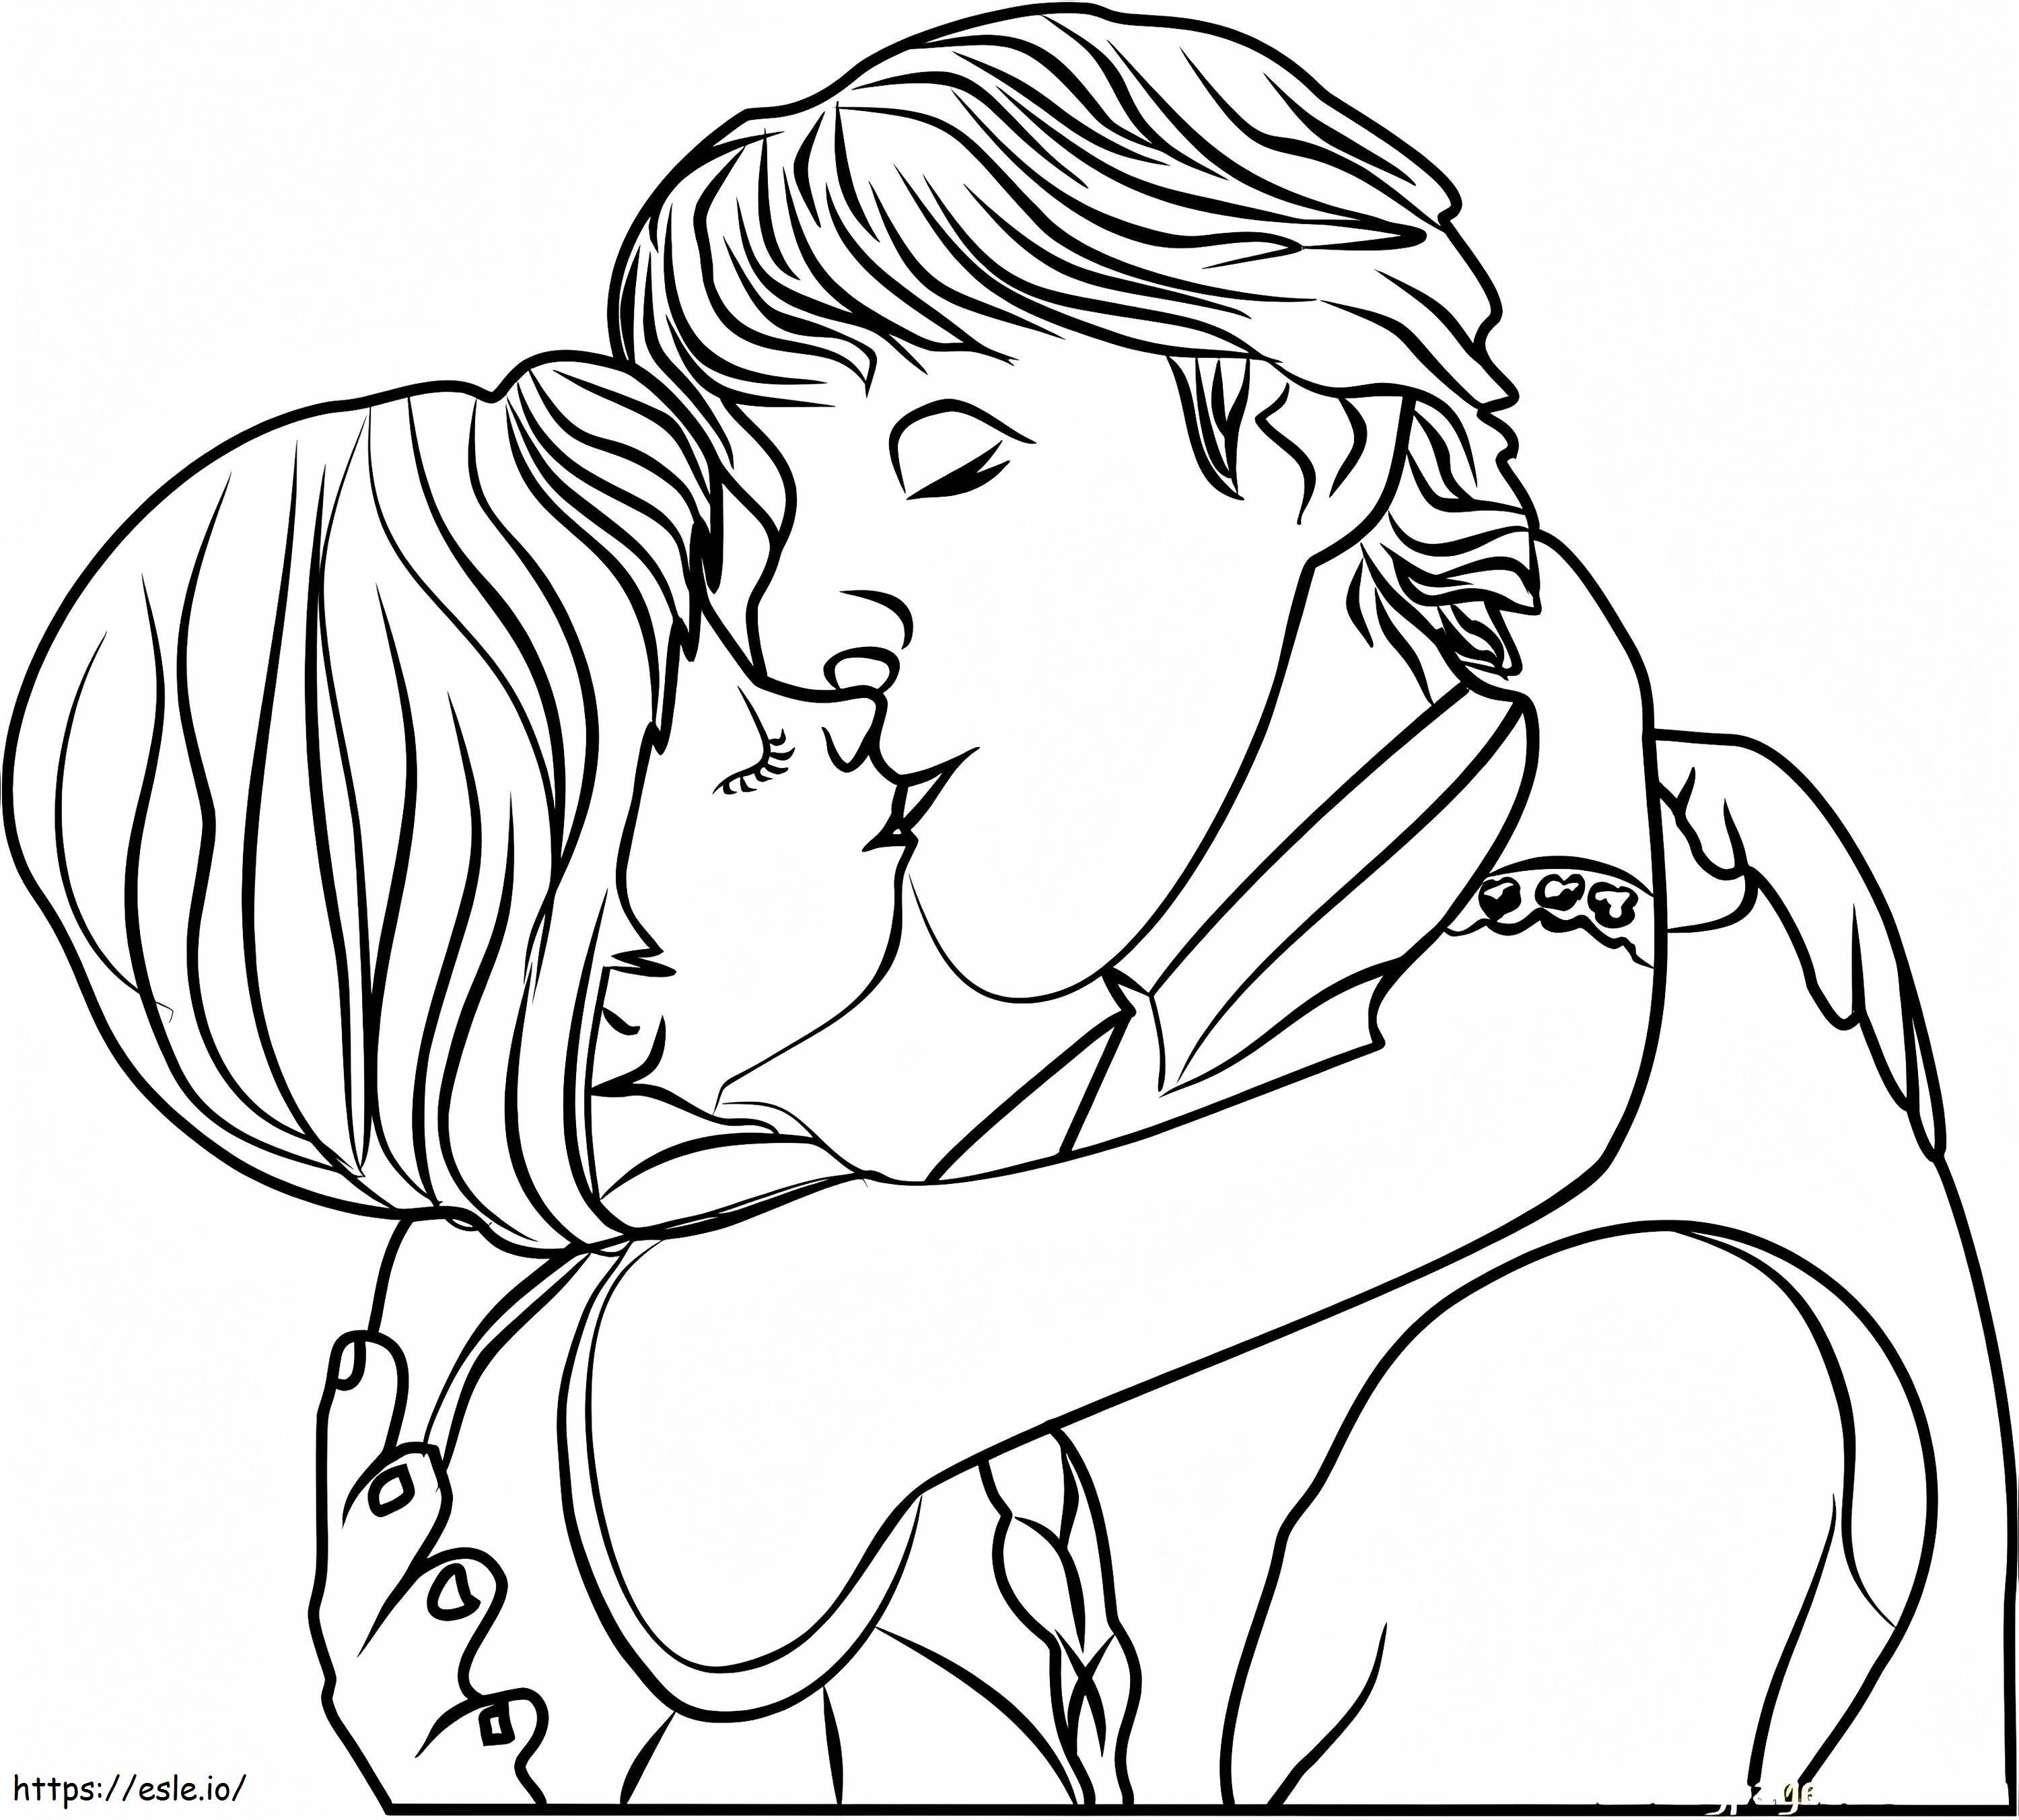 Kristoff e Anna si baciano da colorare